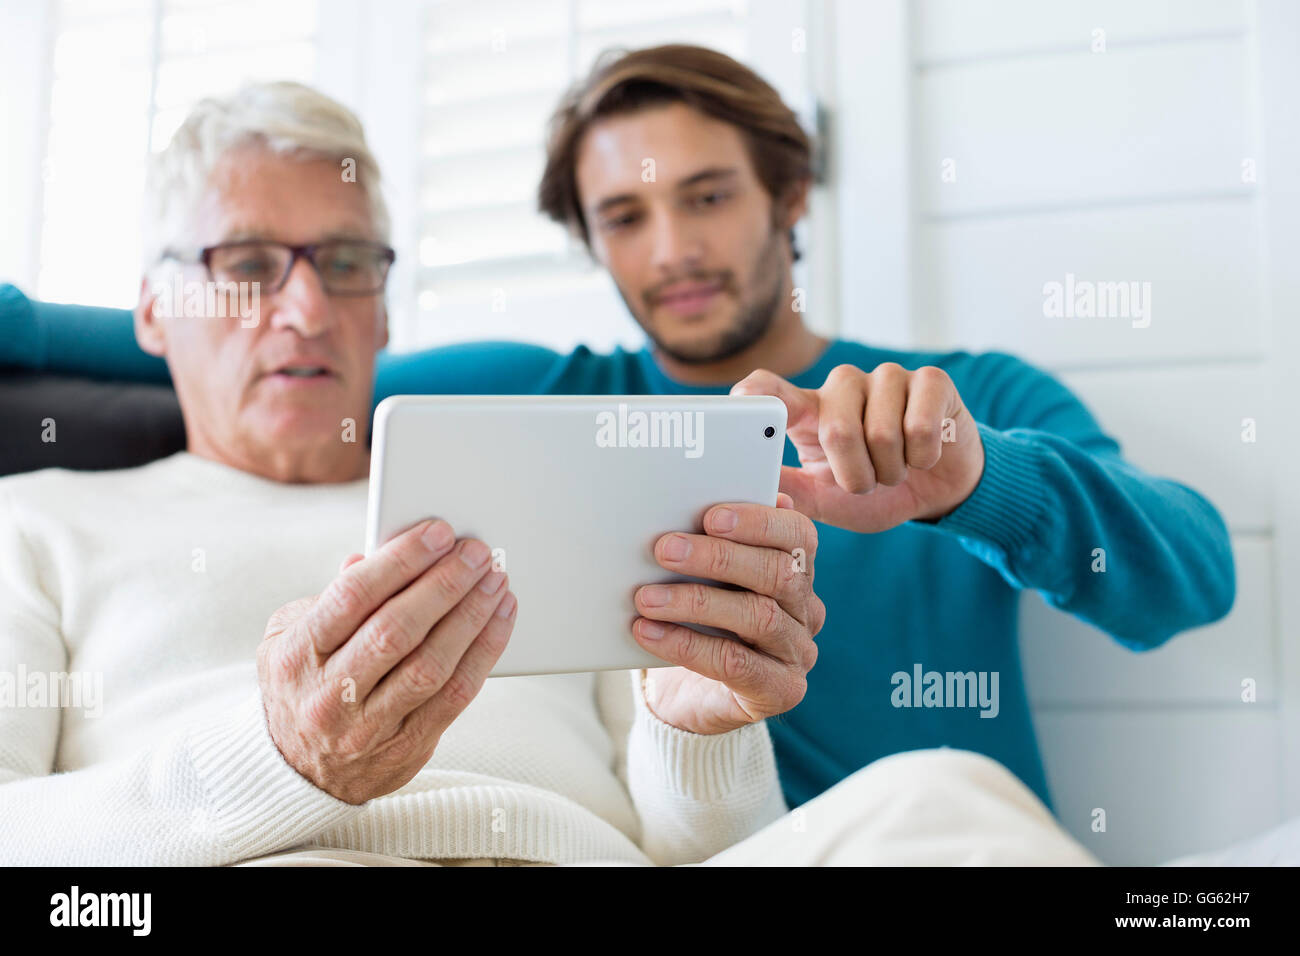 Heureux père et fils using digital tablet in living room Banque D'Images